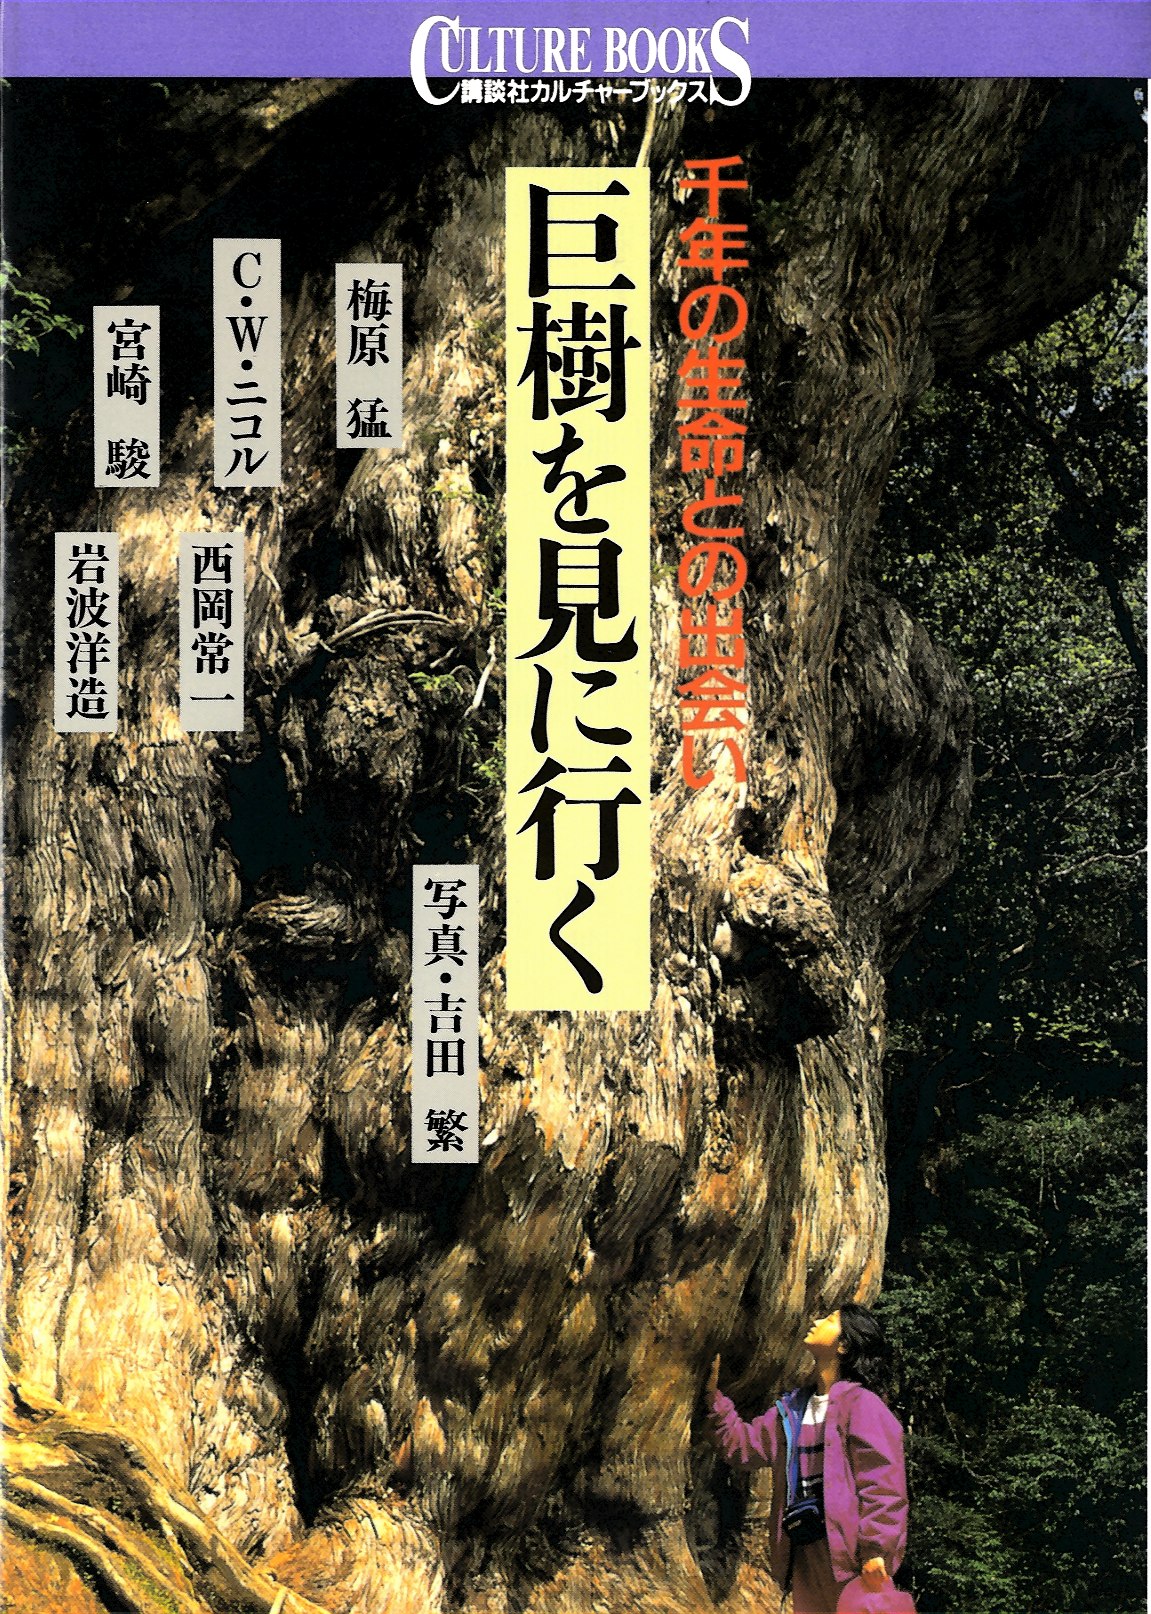 巨樹を見に行く |木の書籍|10-木の知識|木の情報発信基地